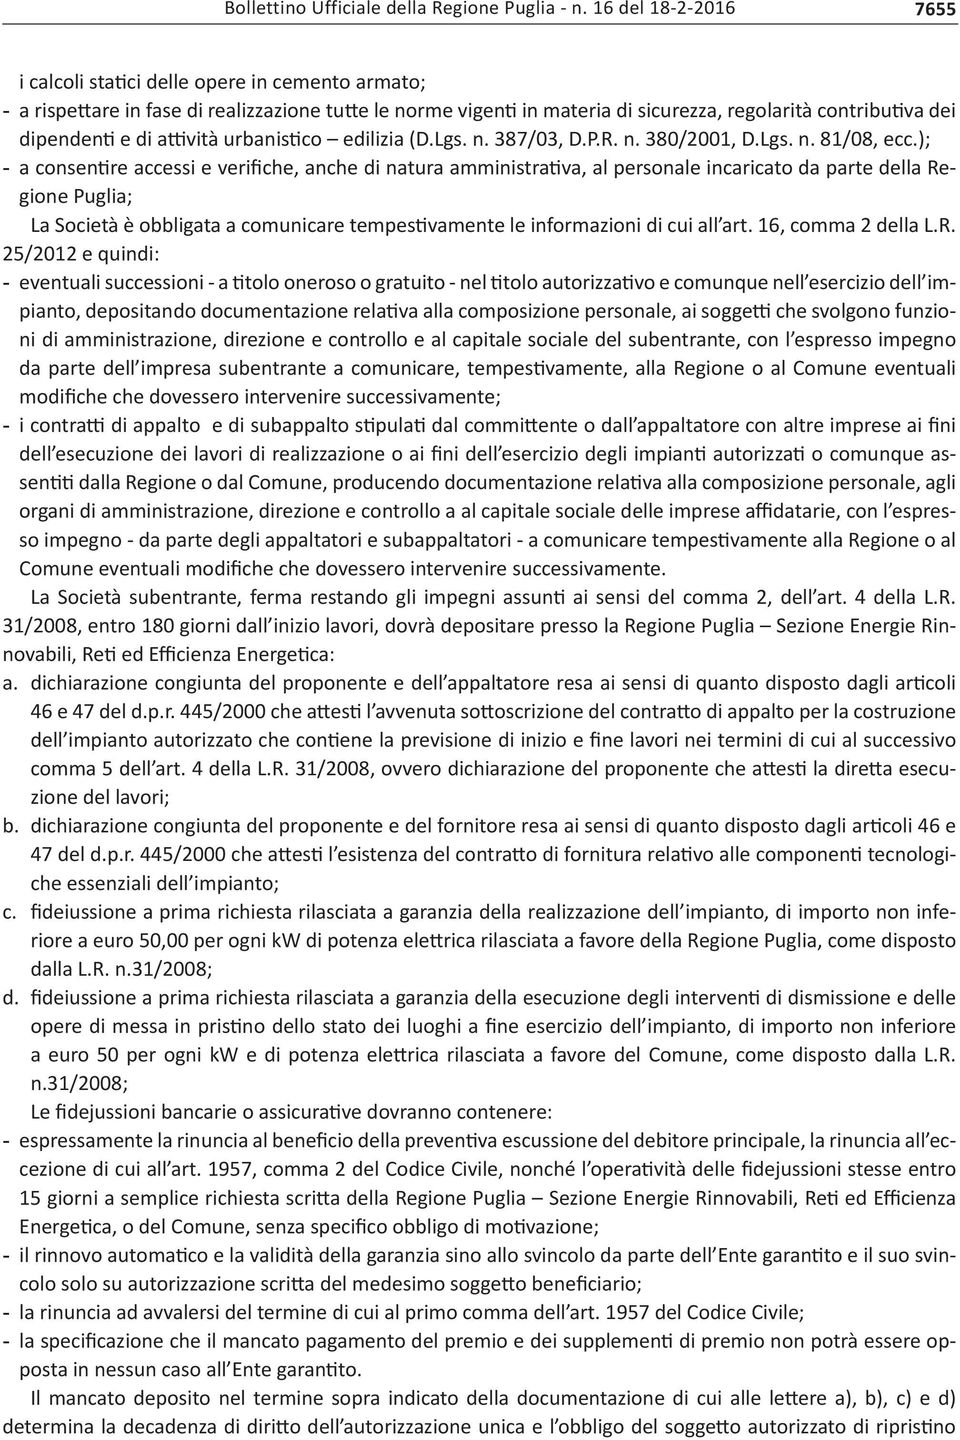 ); - a consentire accessi e verifiche, anche di natura amministrativa, al personale incaricato da parte della Regione Puglia; La Società è obbligata a comunicare tempestivamente le informazioni di